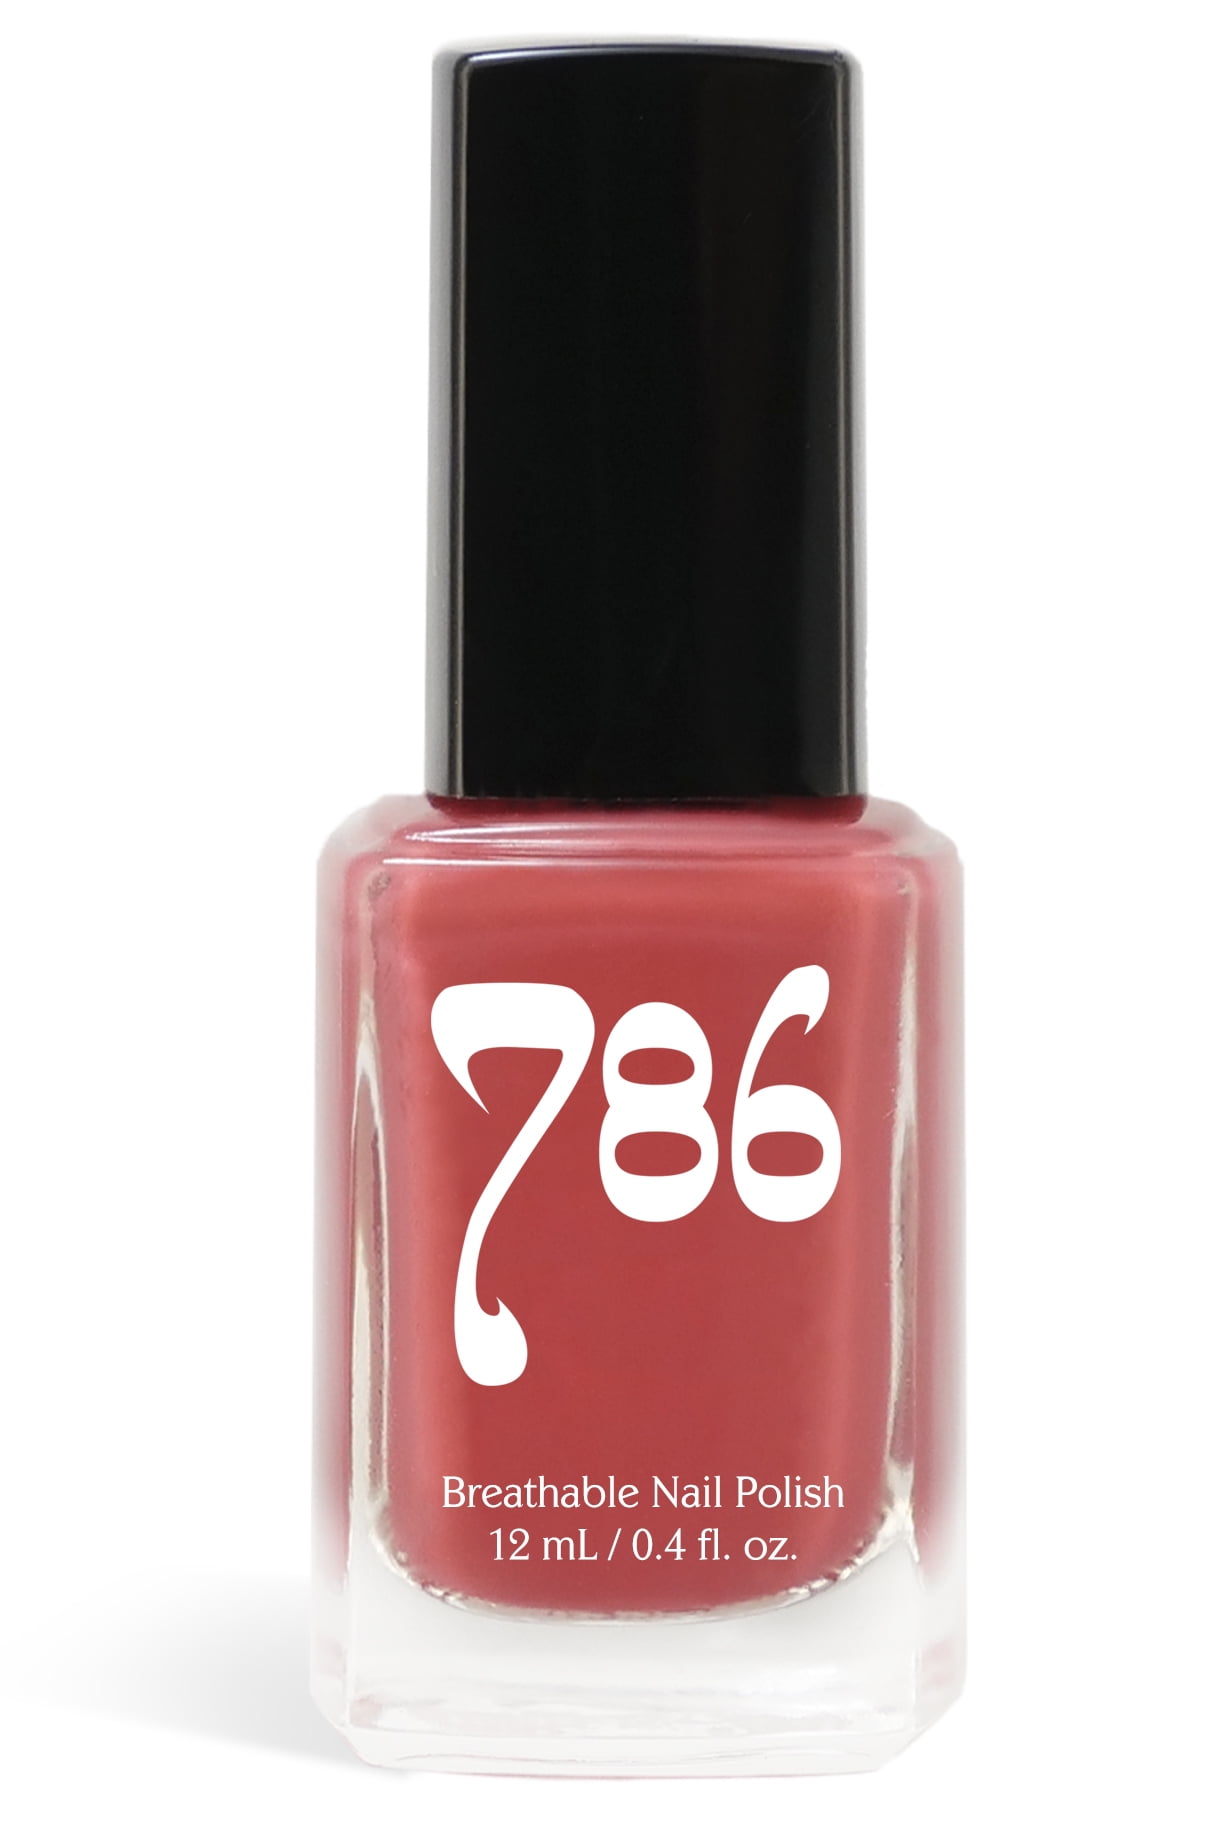 Baghdad - Breathable Nail Polish – 786 Cosmetics